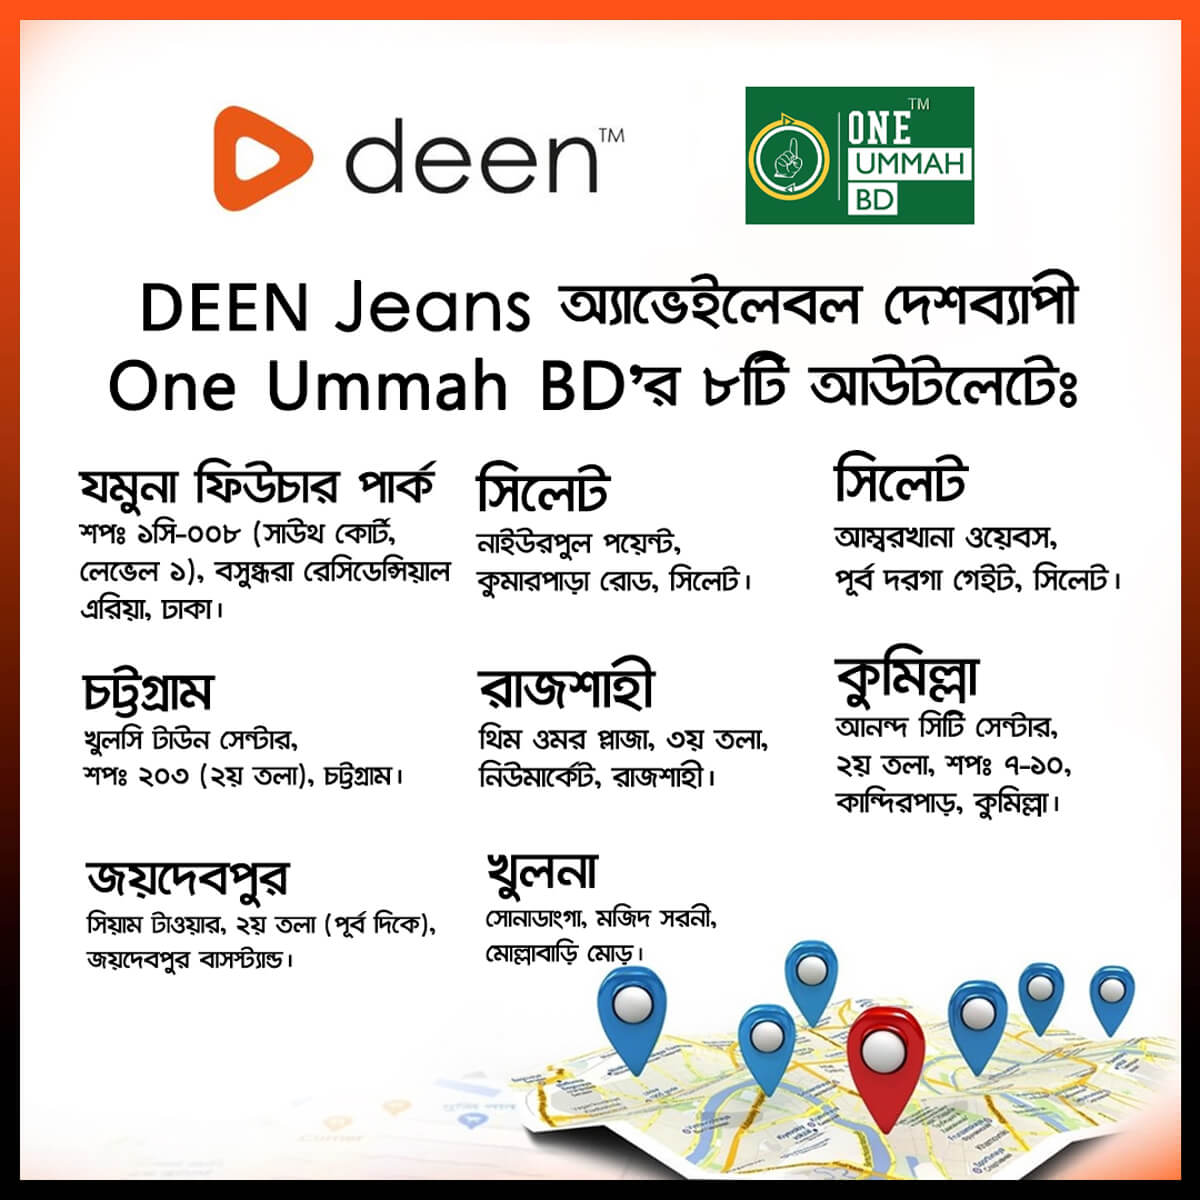 One Ummah BD Outlet